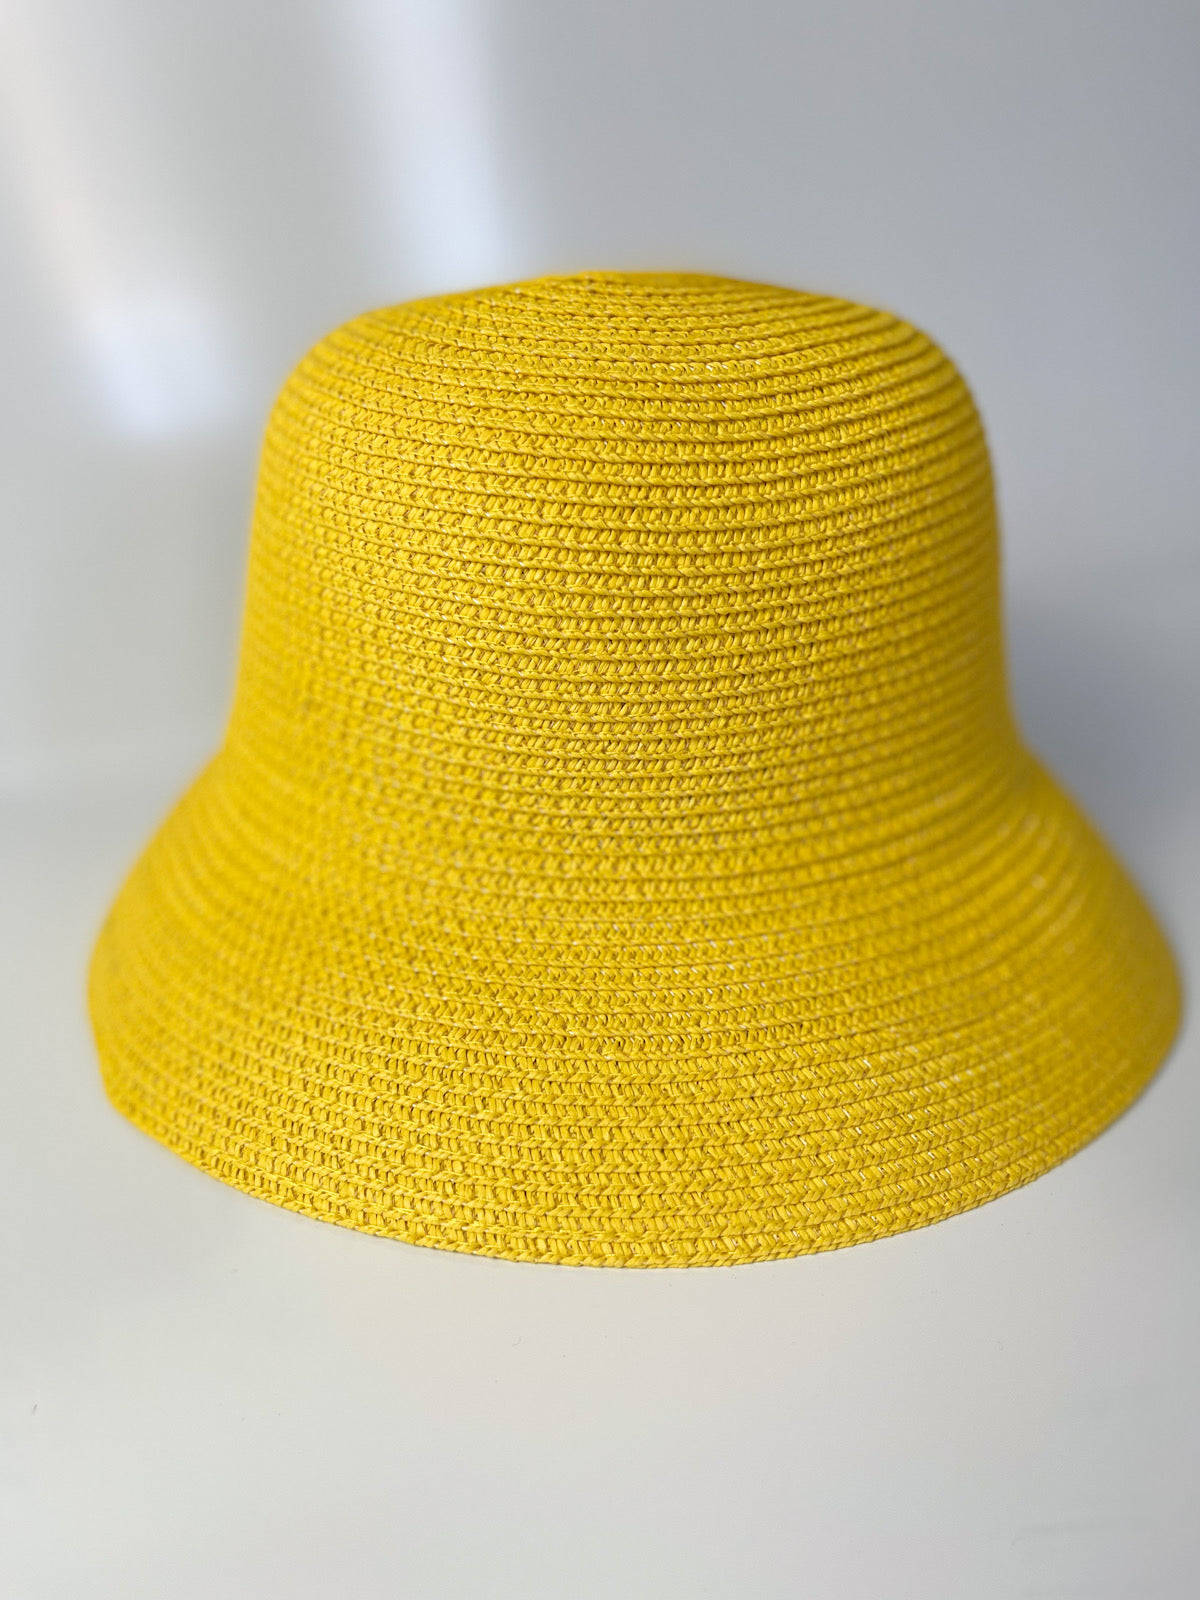 MOWWA-Sarı renk hasır şapka